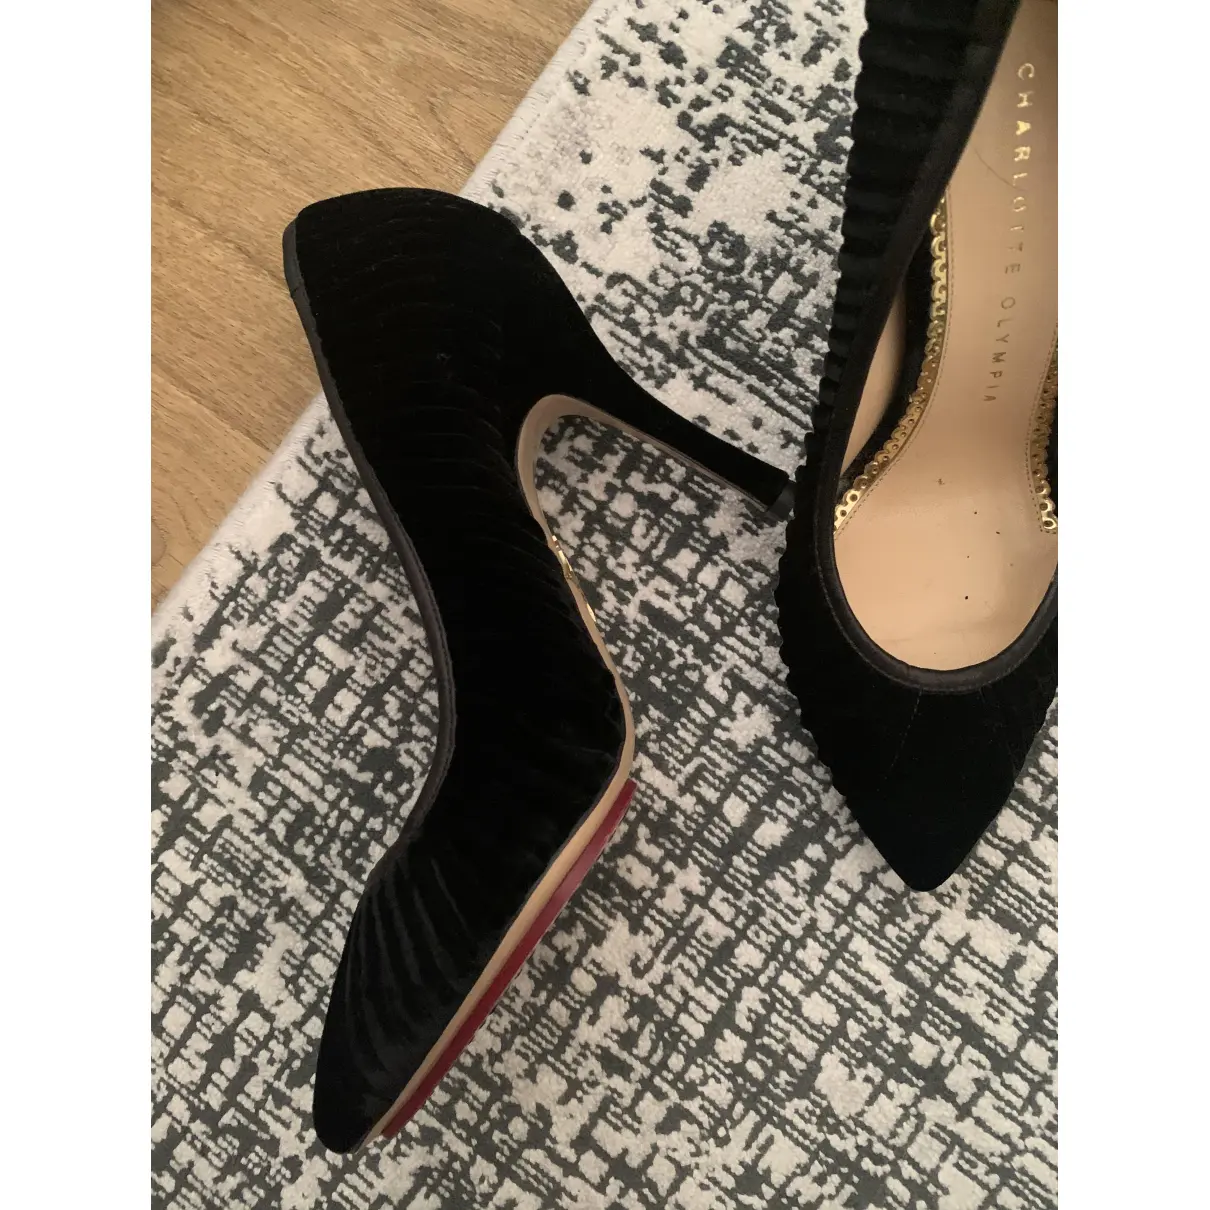 Buy Charlotte Olympia Velvet heels online